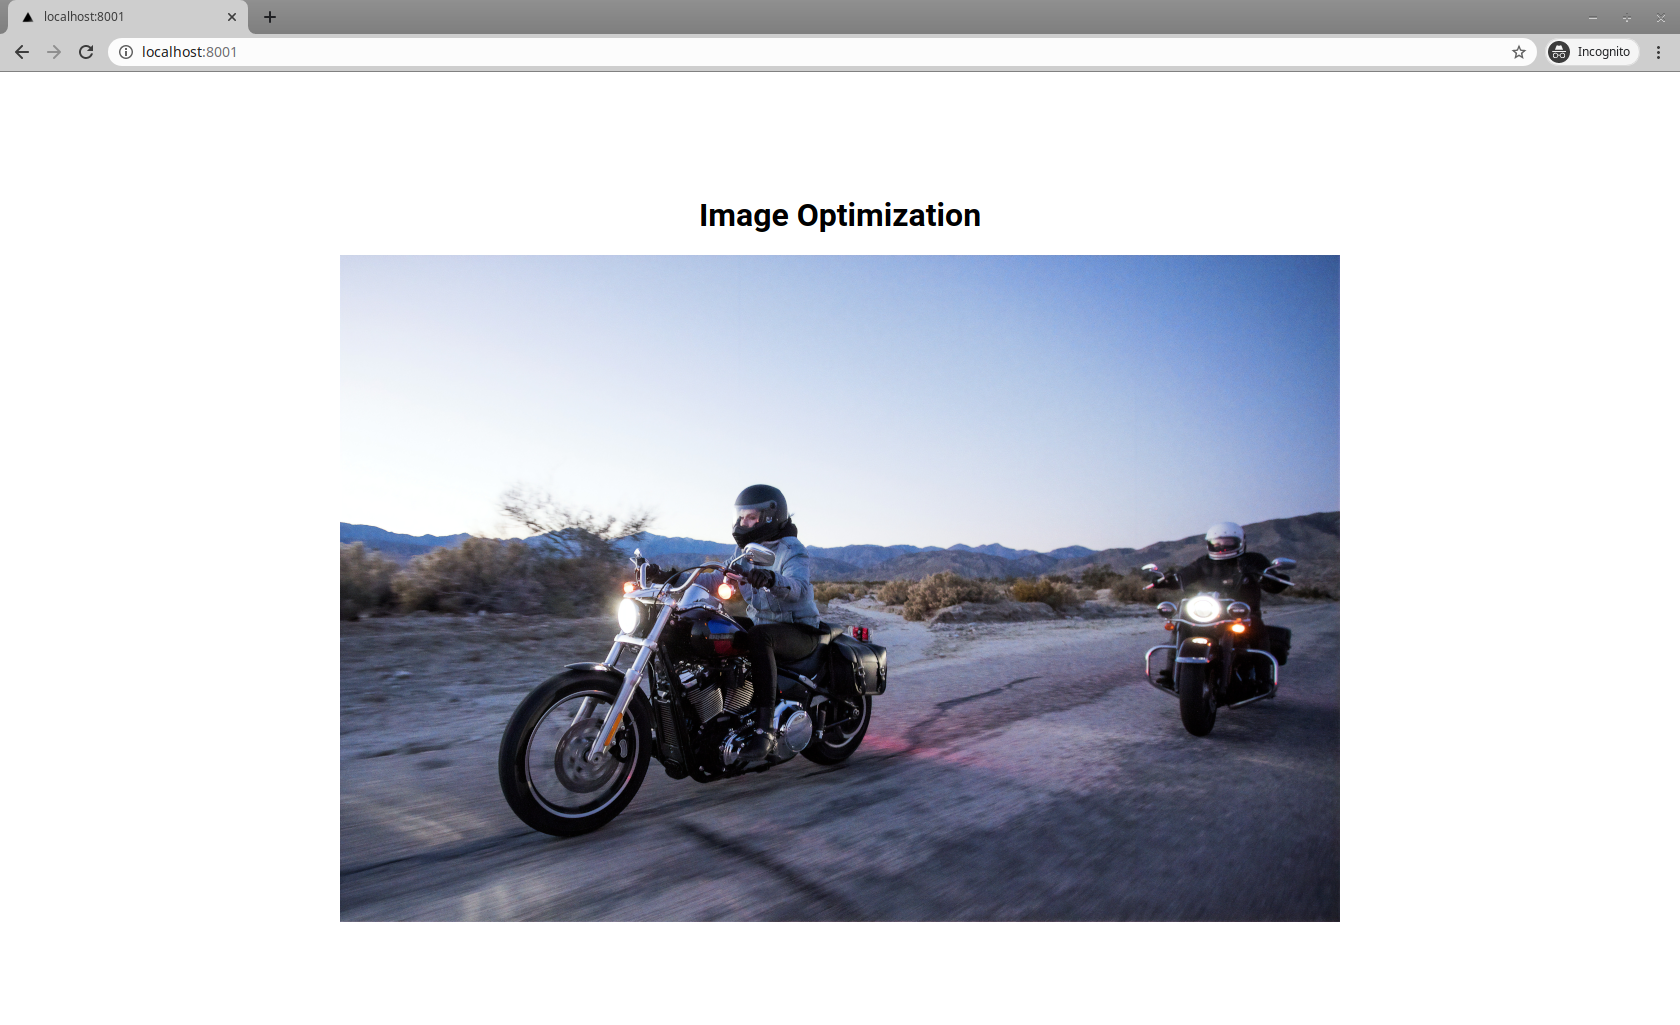 next.js displaying an example image